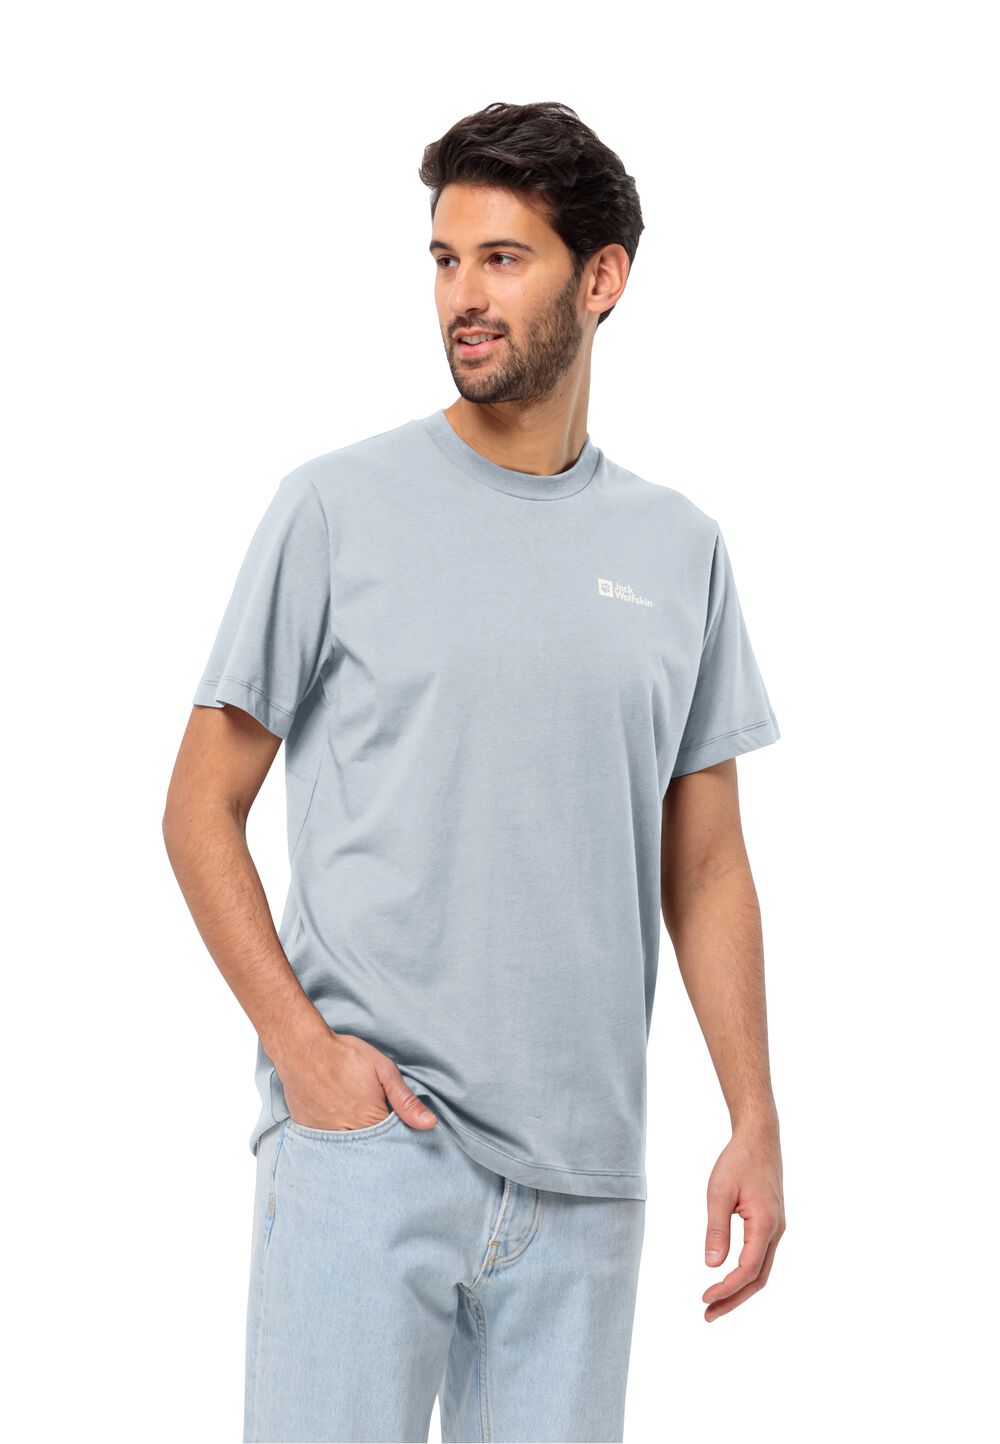 Jack Wolfskin Essential T-Shirt Men Heren T-shirt van biologisch katoen XL soft blue soft blue